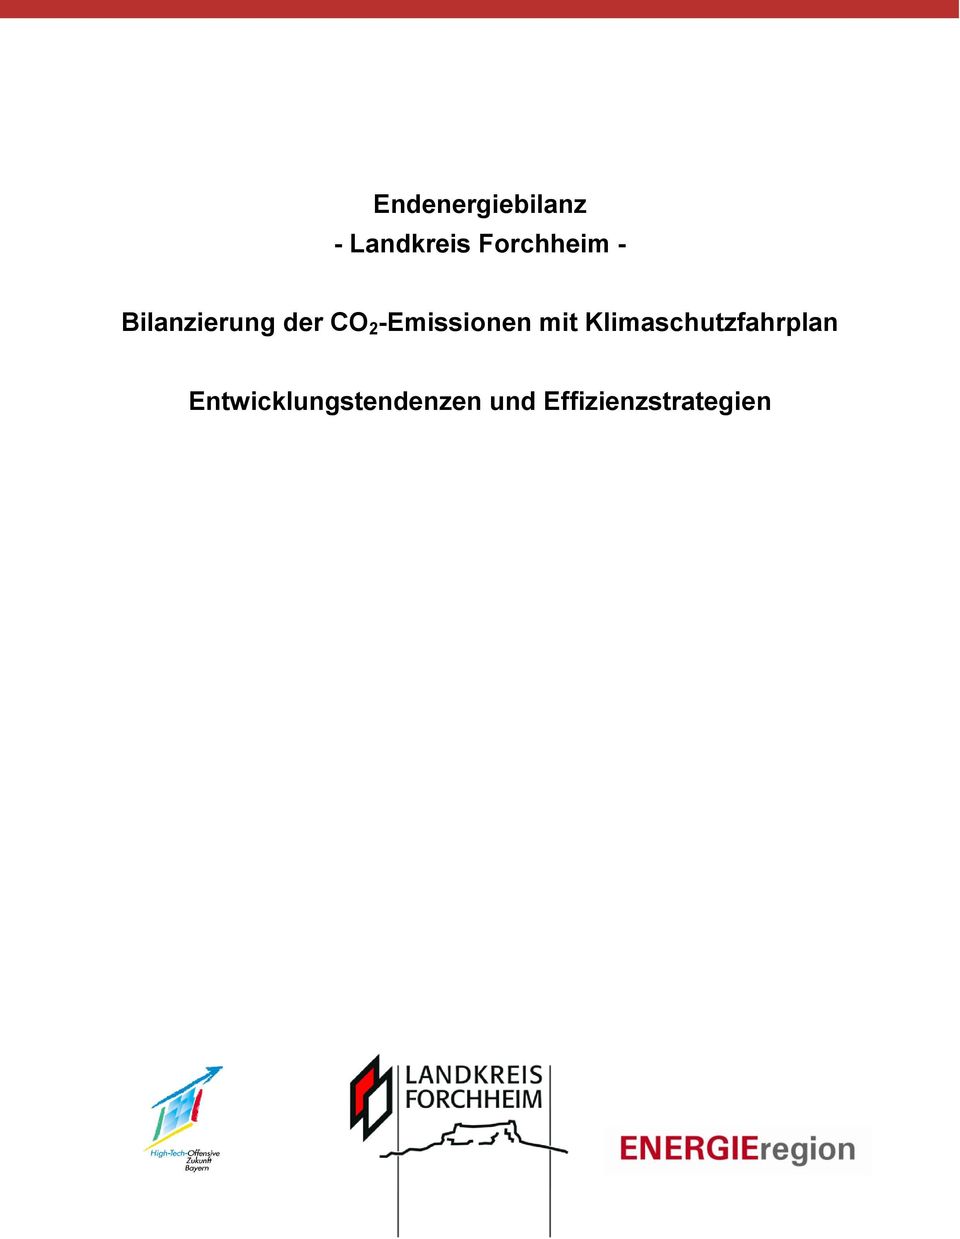 -Emissionen mit Klimaschutzfahrplan